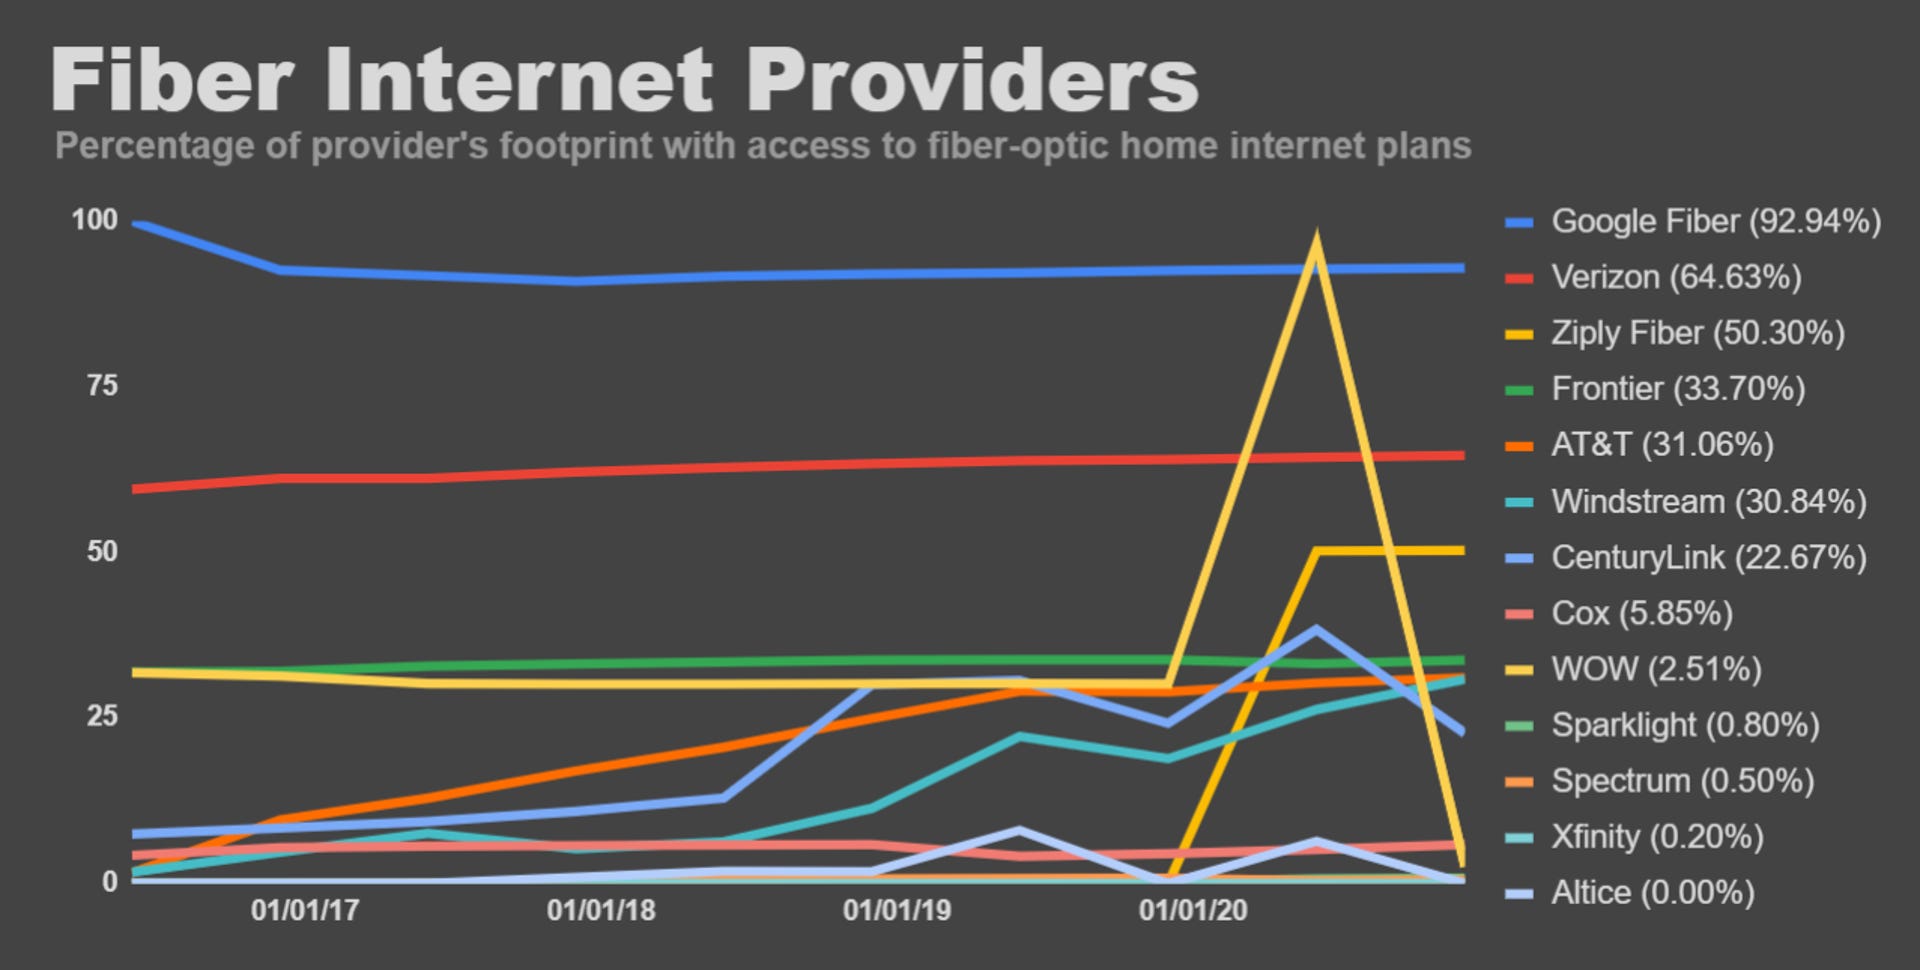 isp-fiber-internet-providers-fcc-data-june-2020